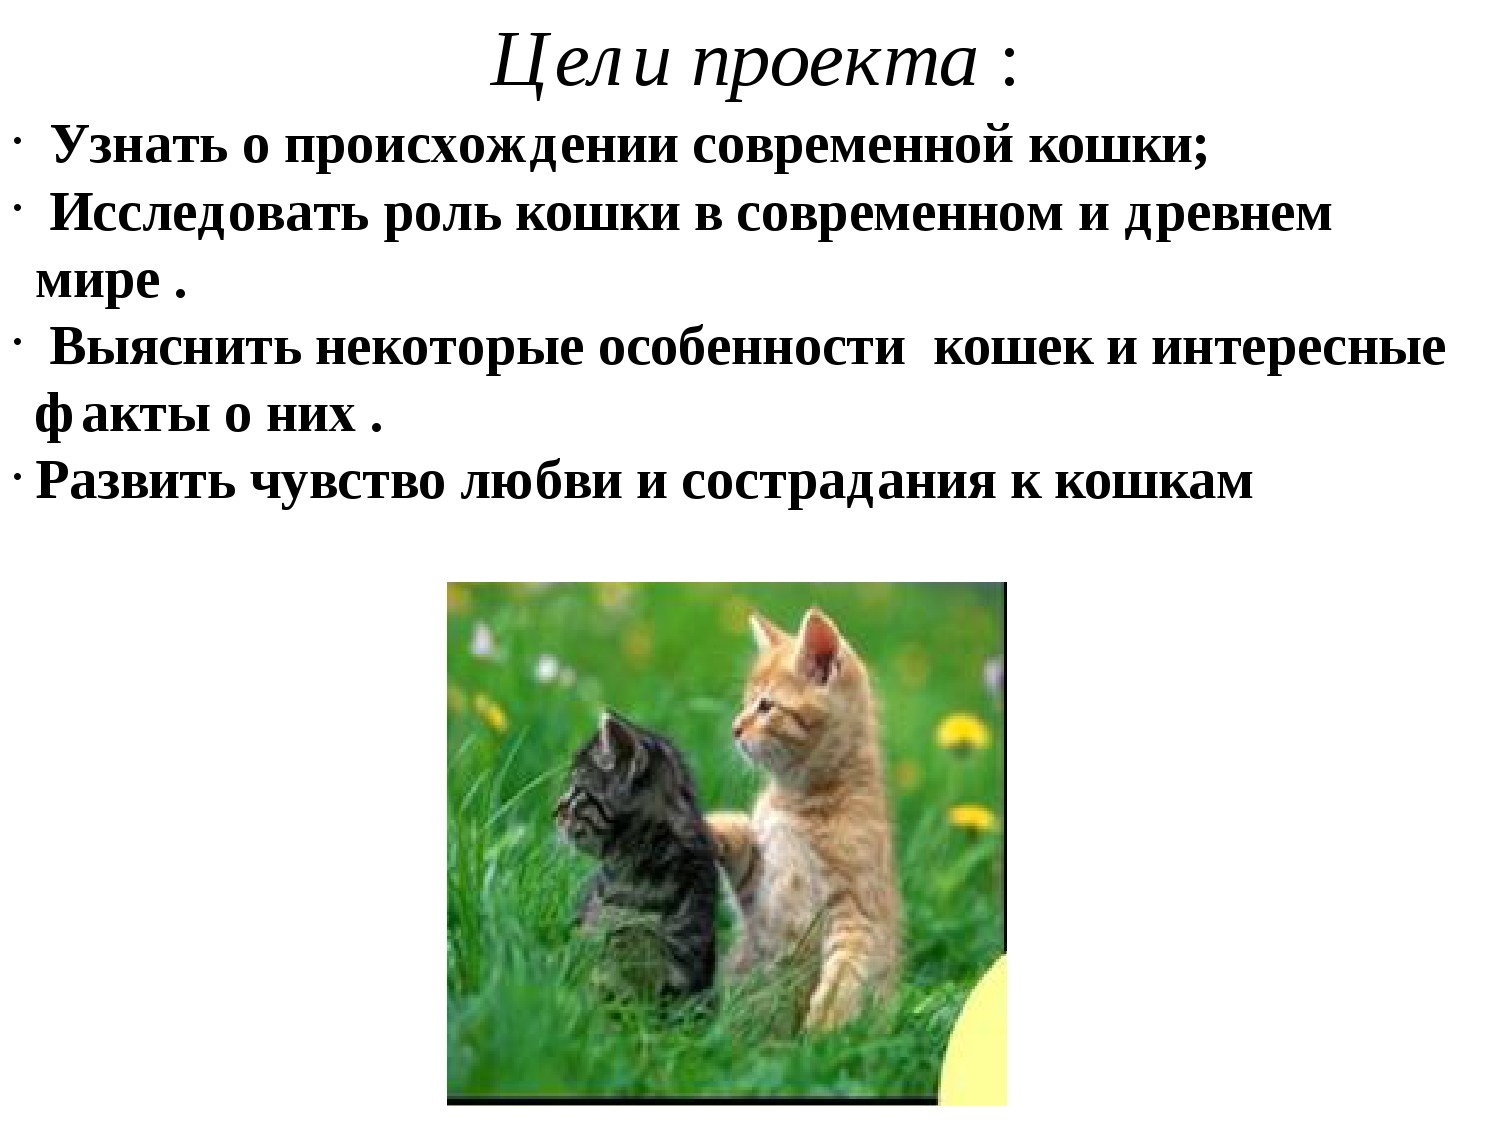 Рассказ о кошках окружающий мир. Презентация про кошек. Проект на тему кошки. Кошачья тема для презентации. Проектная работа про кошек.